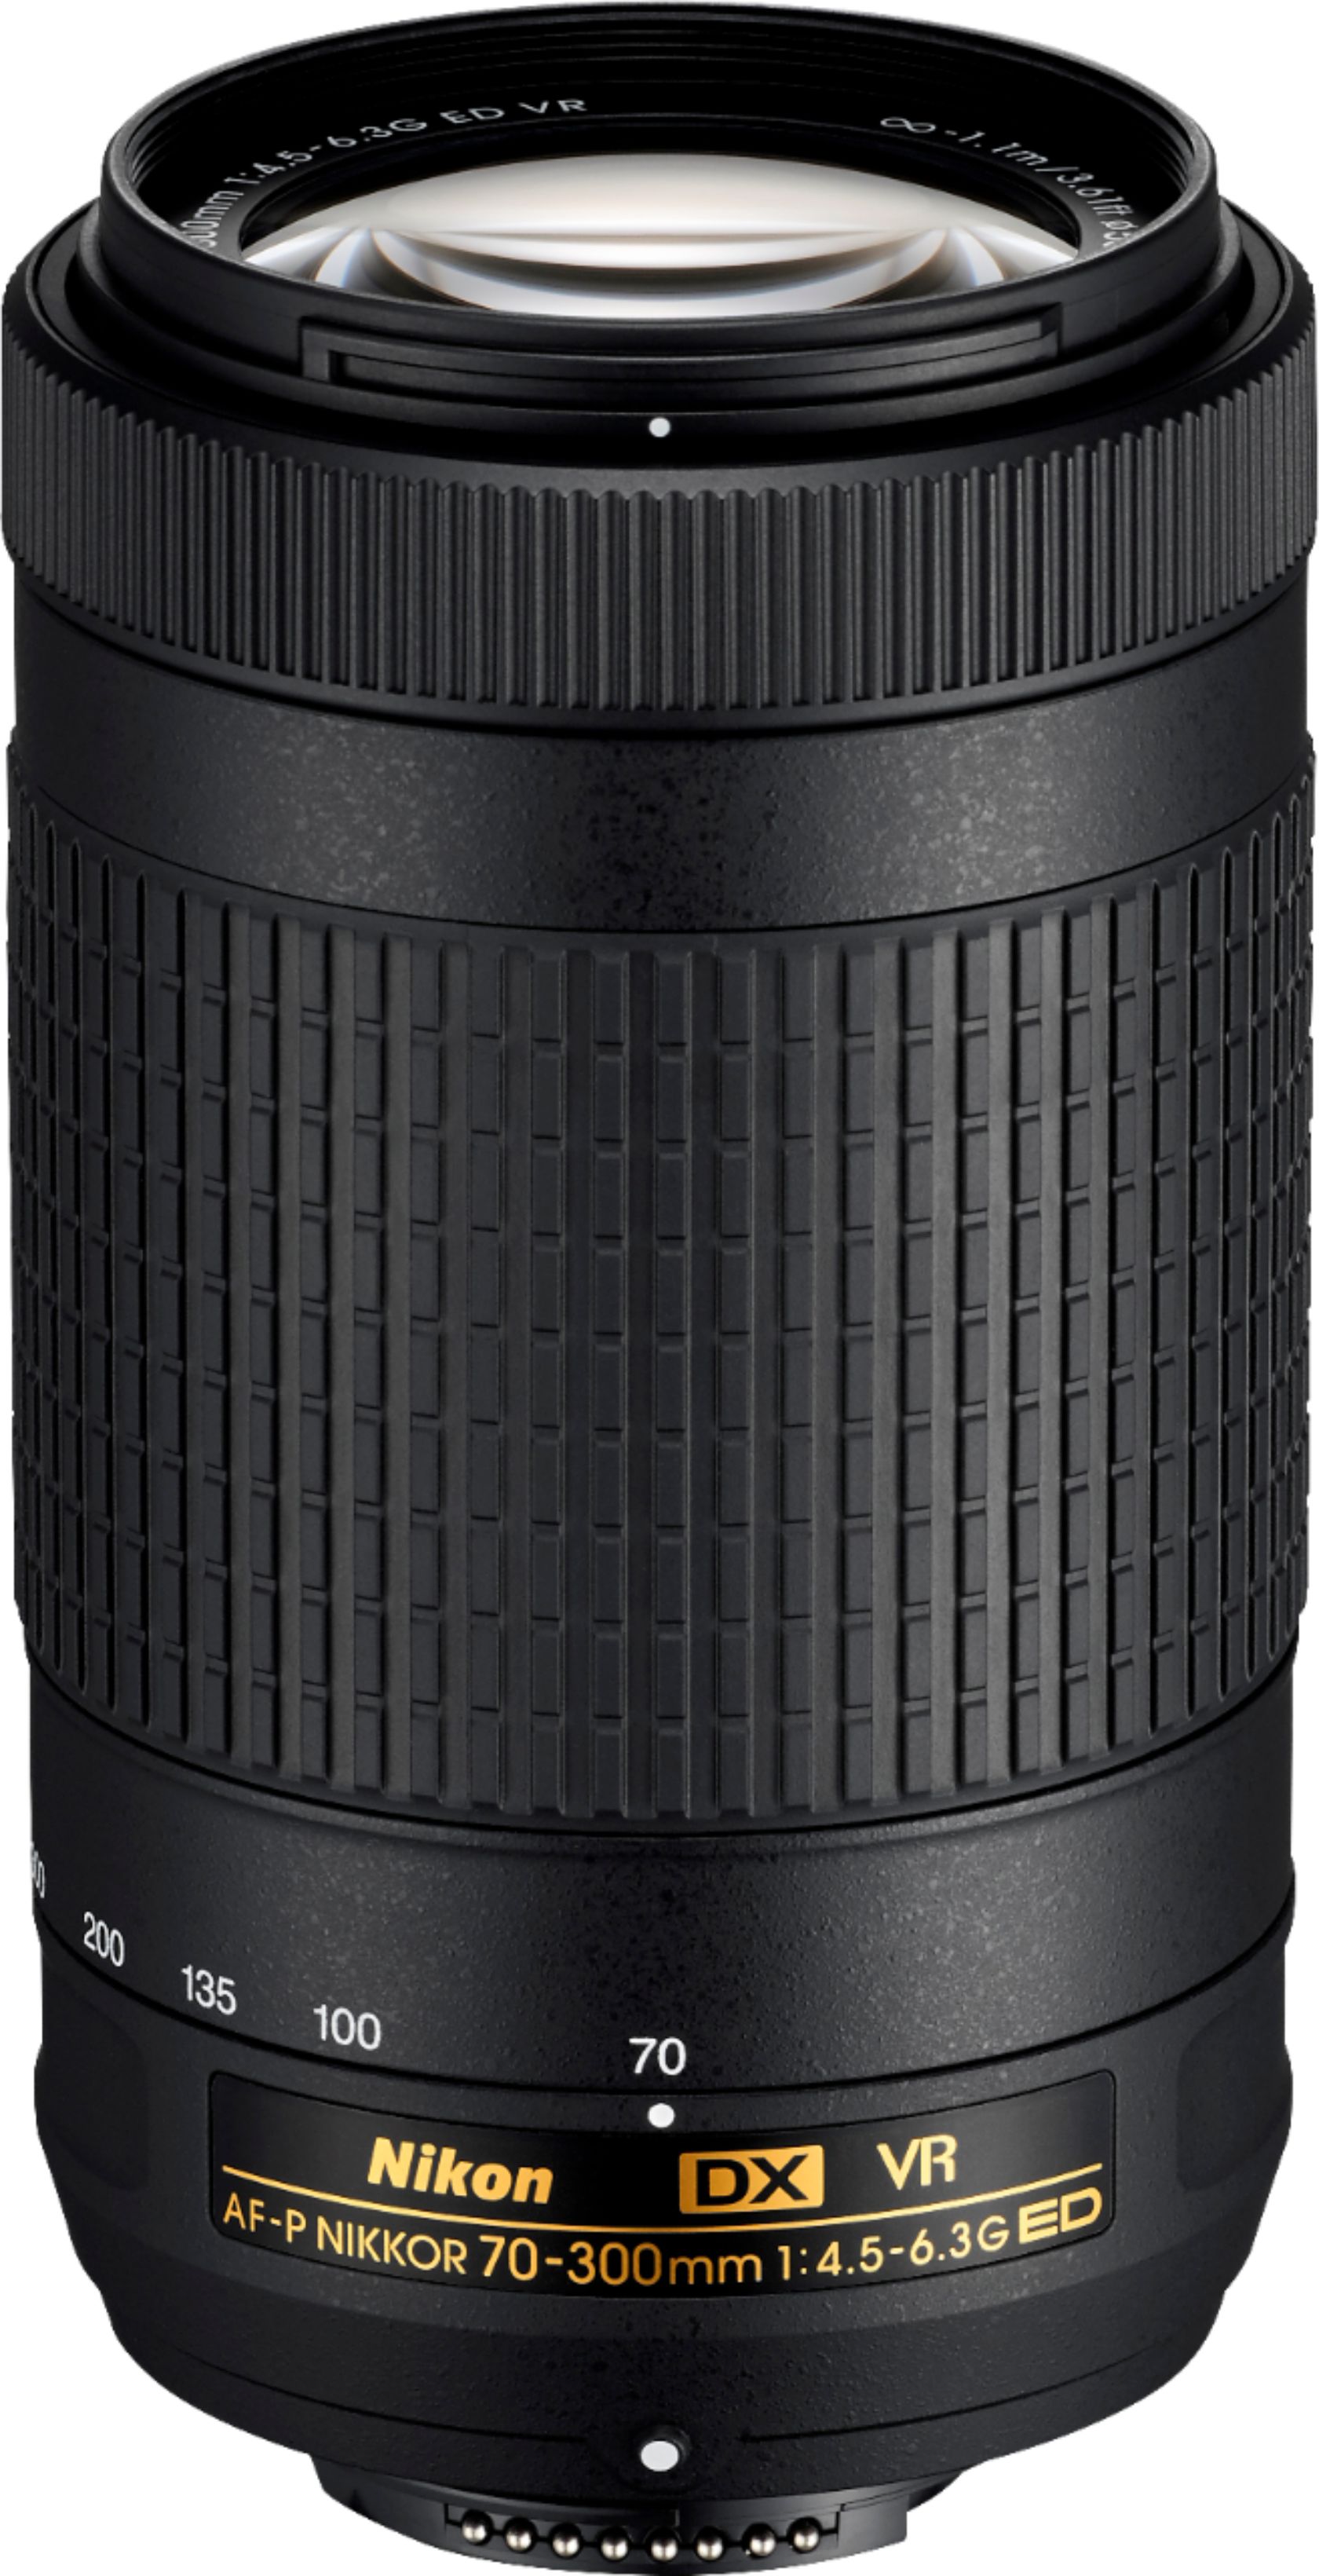 Nikon AF-P DX NIKKOR 70-300mm f/4.5-6.3G ED VR  - Best Buy